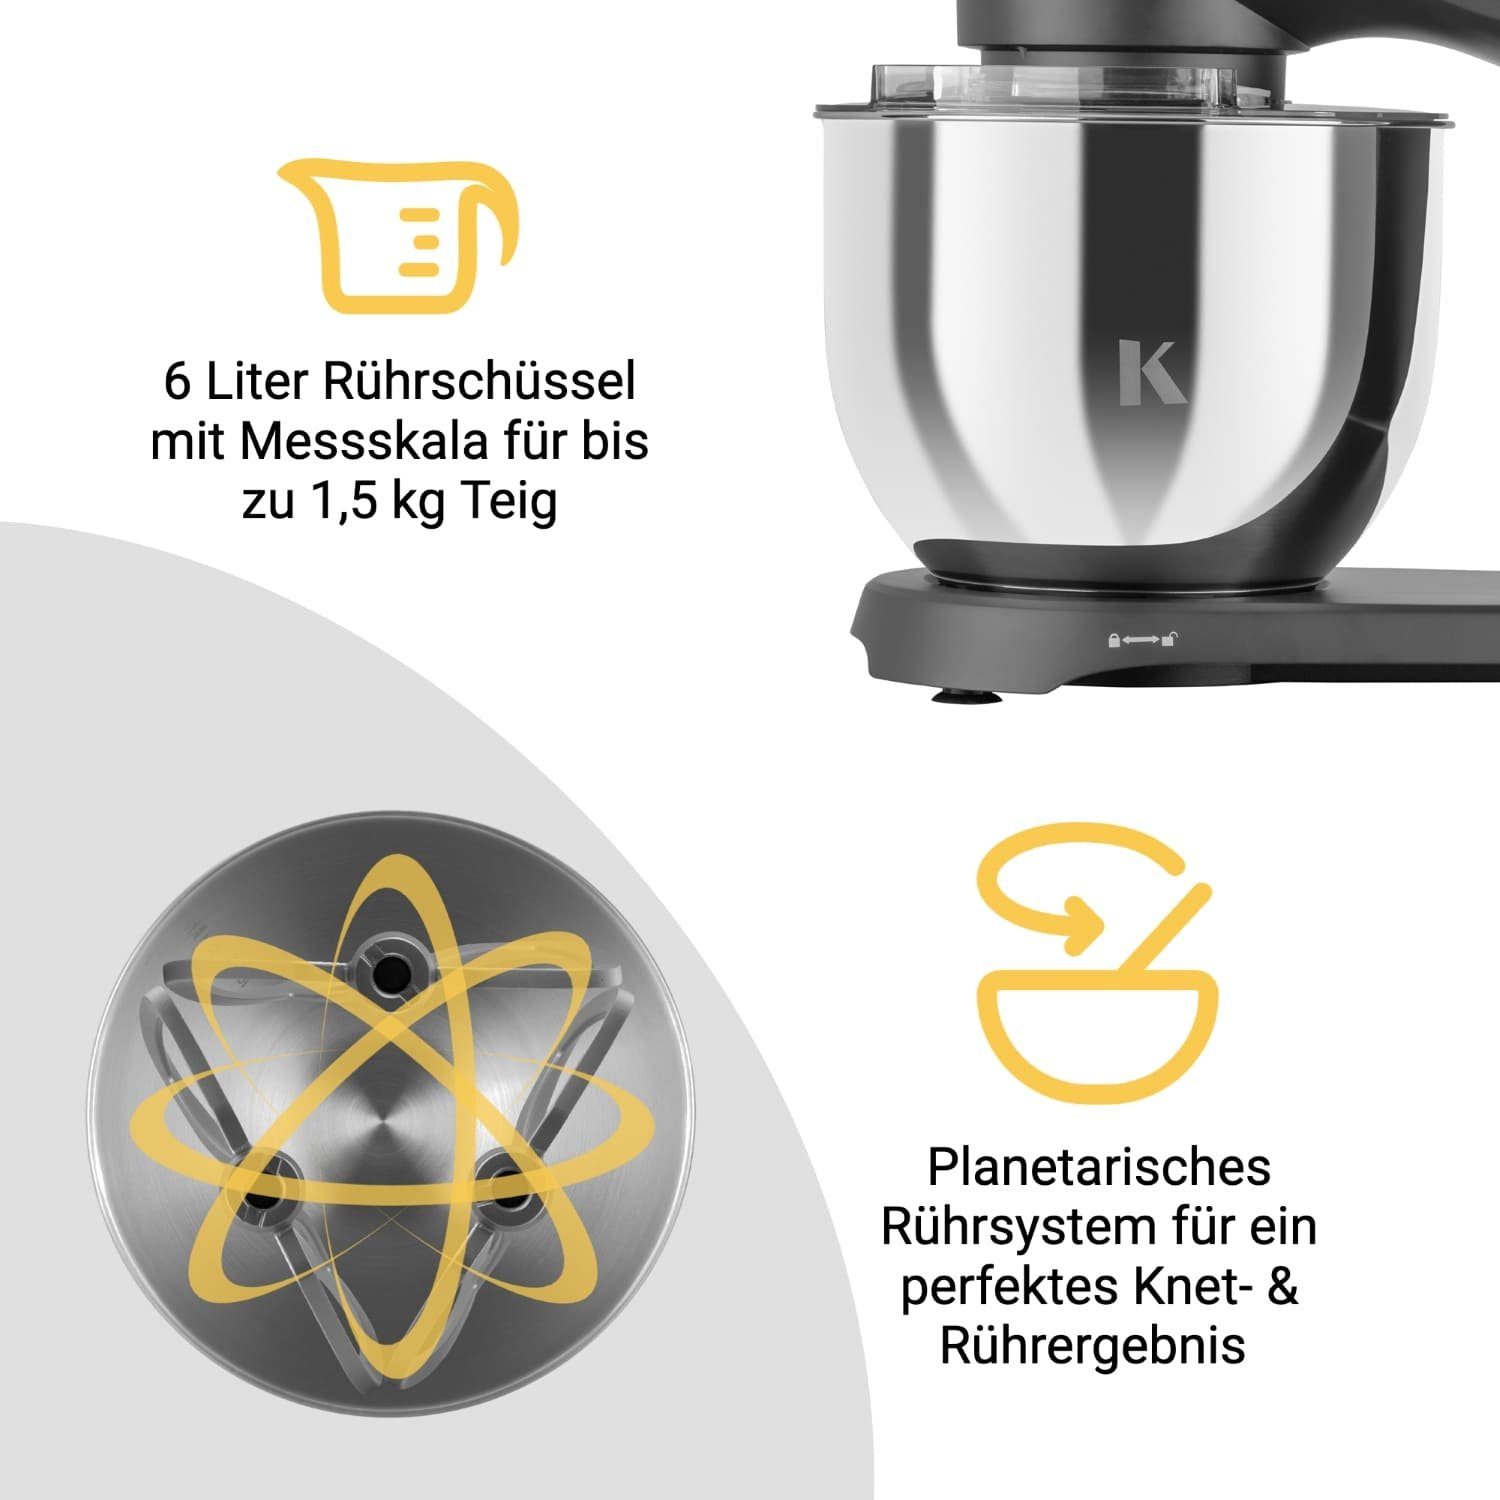 Küchenmaschine Edelstahl KLAMER Schüs… KLAMER mit Küchenmaschine 1800W, 6 Knetmaschine Liter